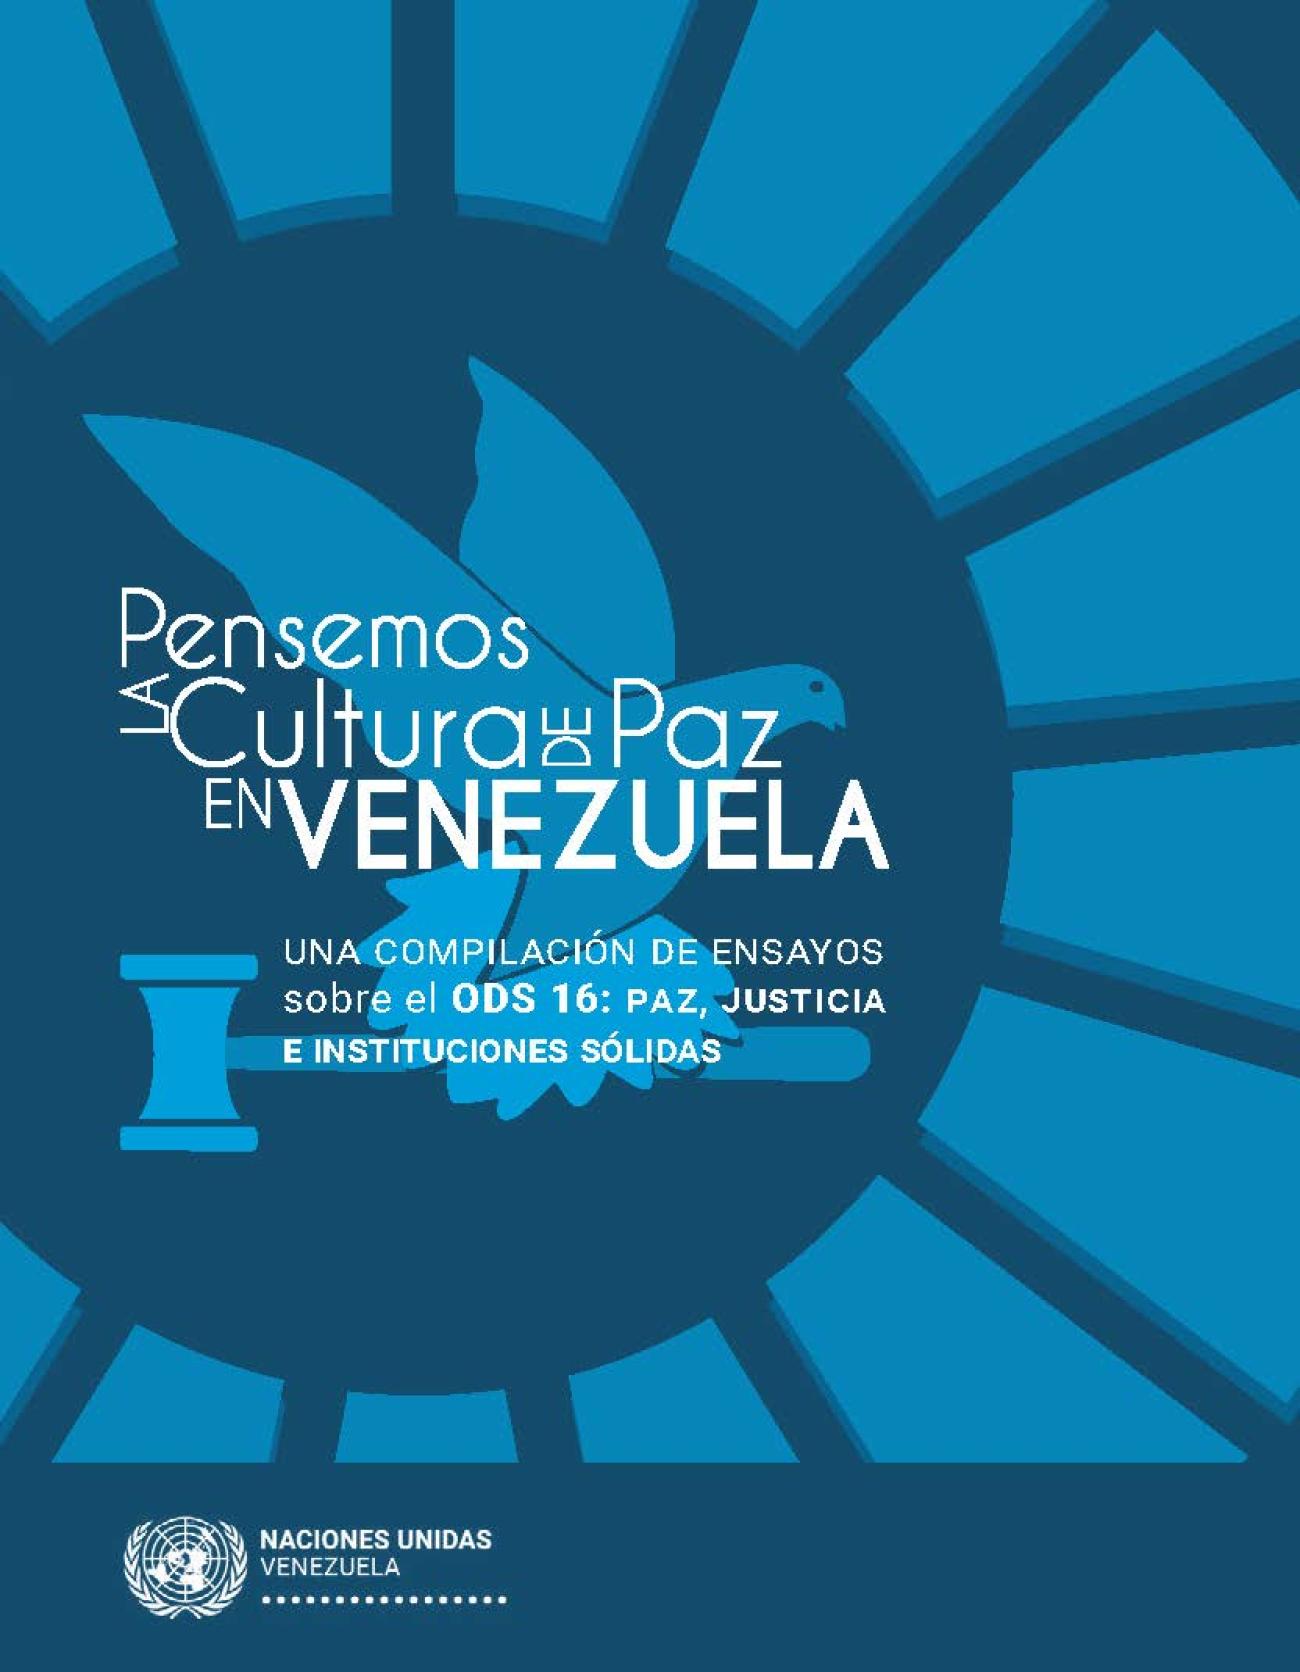 Portada de la compilación de ensayos ganadores del concurso "Pensemos la Cultura de Paz en Venezuela"